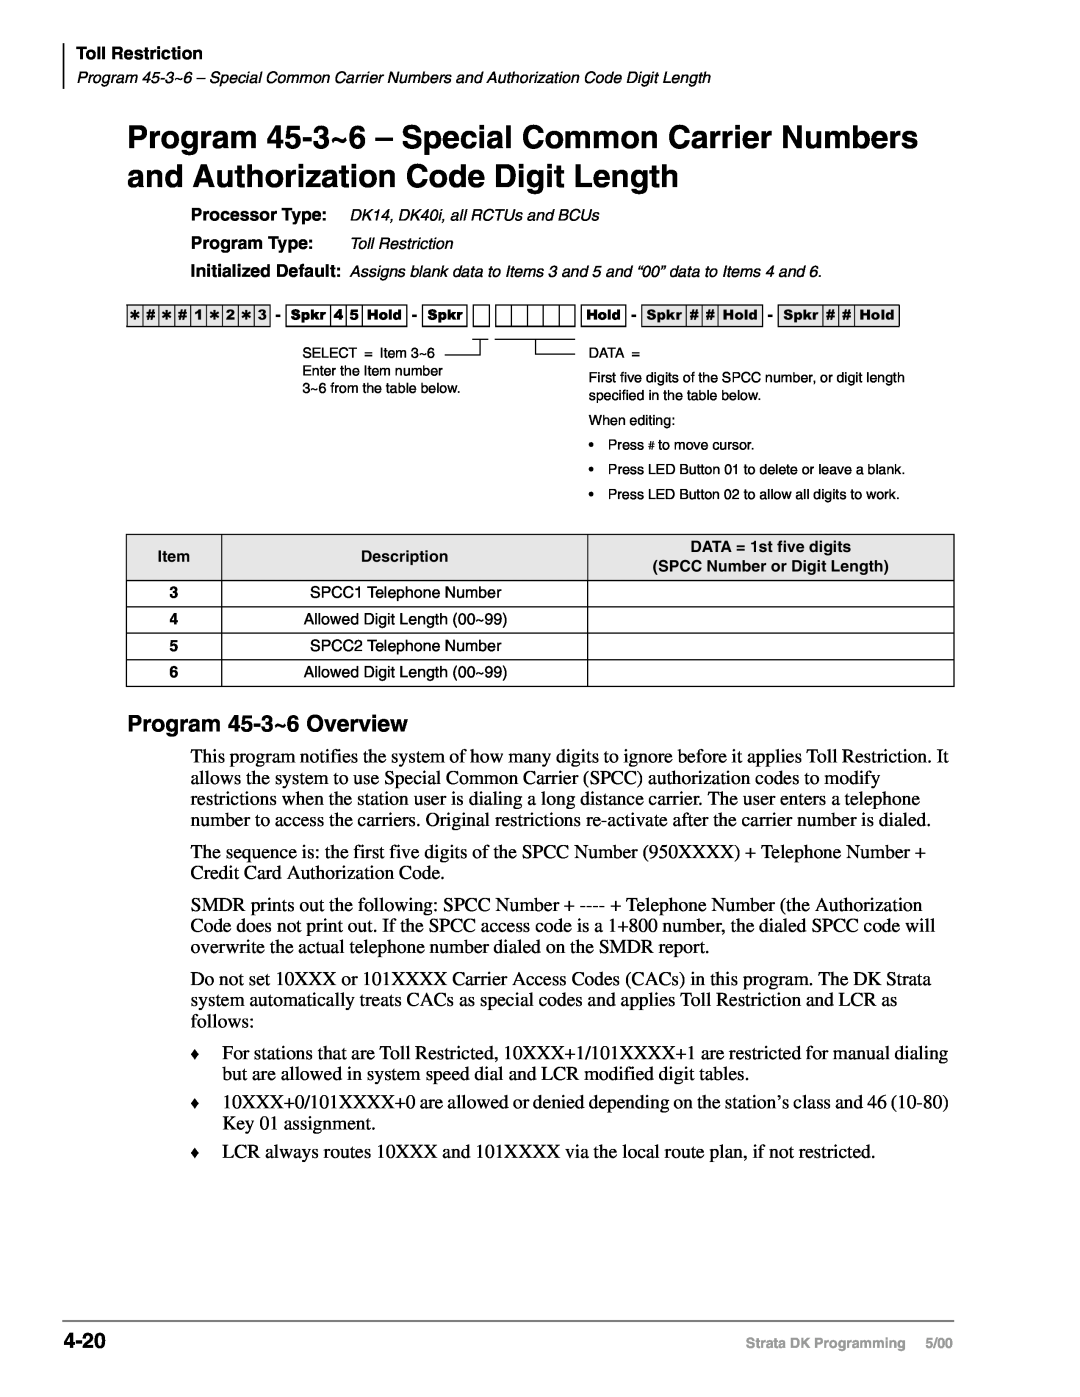 Toshiba DK40I, dk14 Program 45-3~6Overview, 4-20, Item, Description, DATA = 1st five digits, SPCC Number or Digit Length 